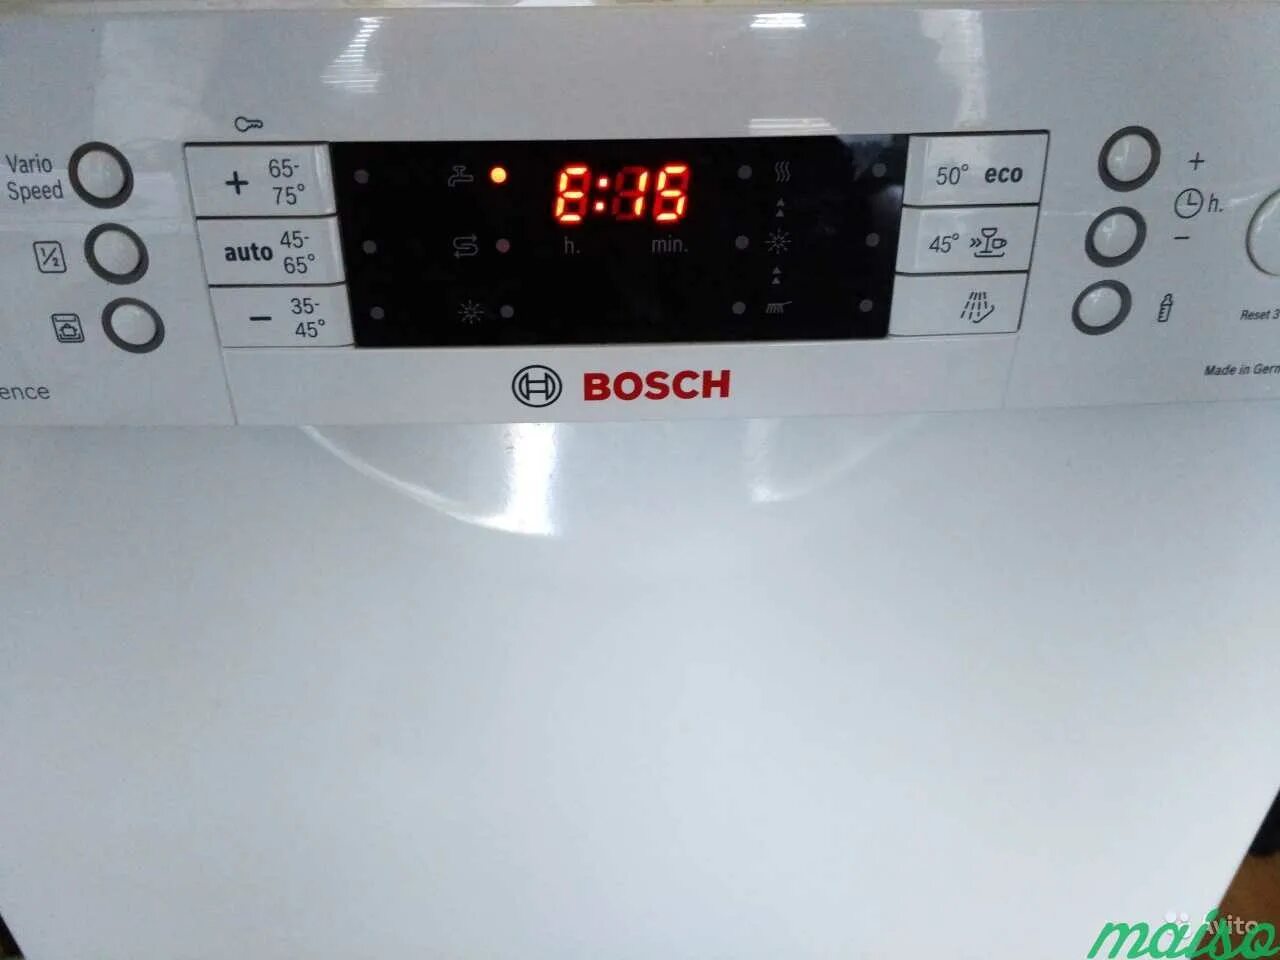 Посудомоечная бош ошибка е90. Ошибка посудомоечной машины Bosch е90. Посудомоечная машина бош ошибка е 19. ПММ бош ошибка е0. Е15 посудомойка бош